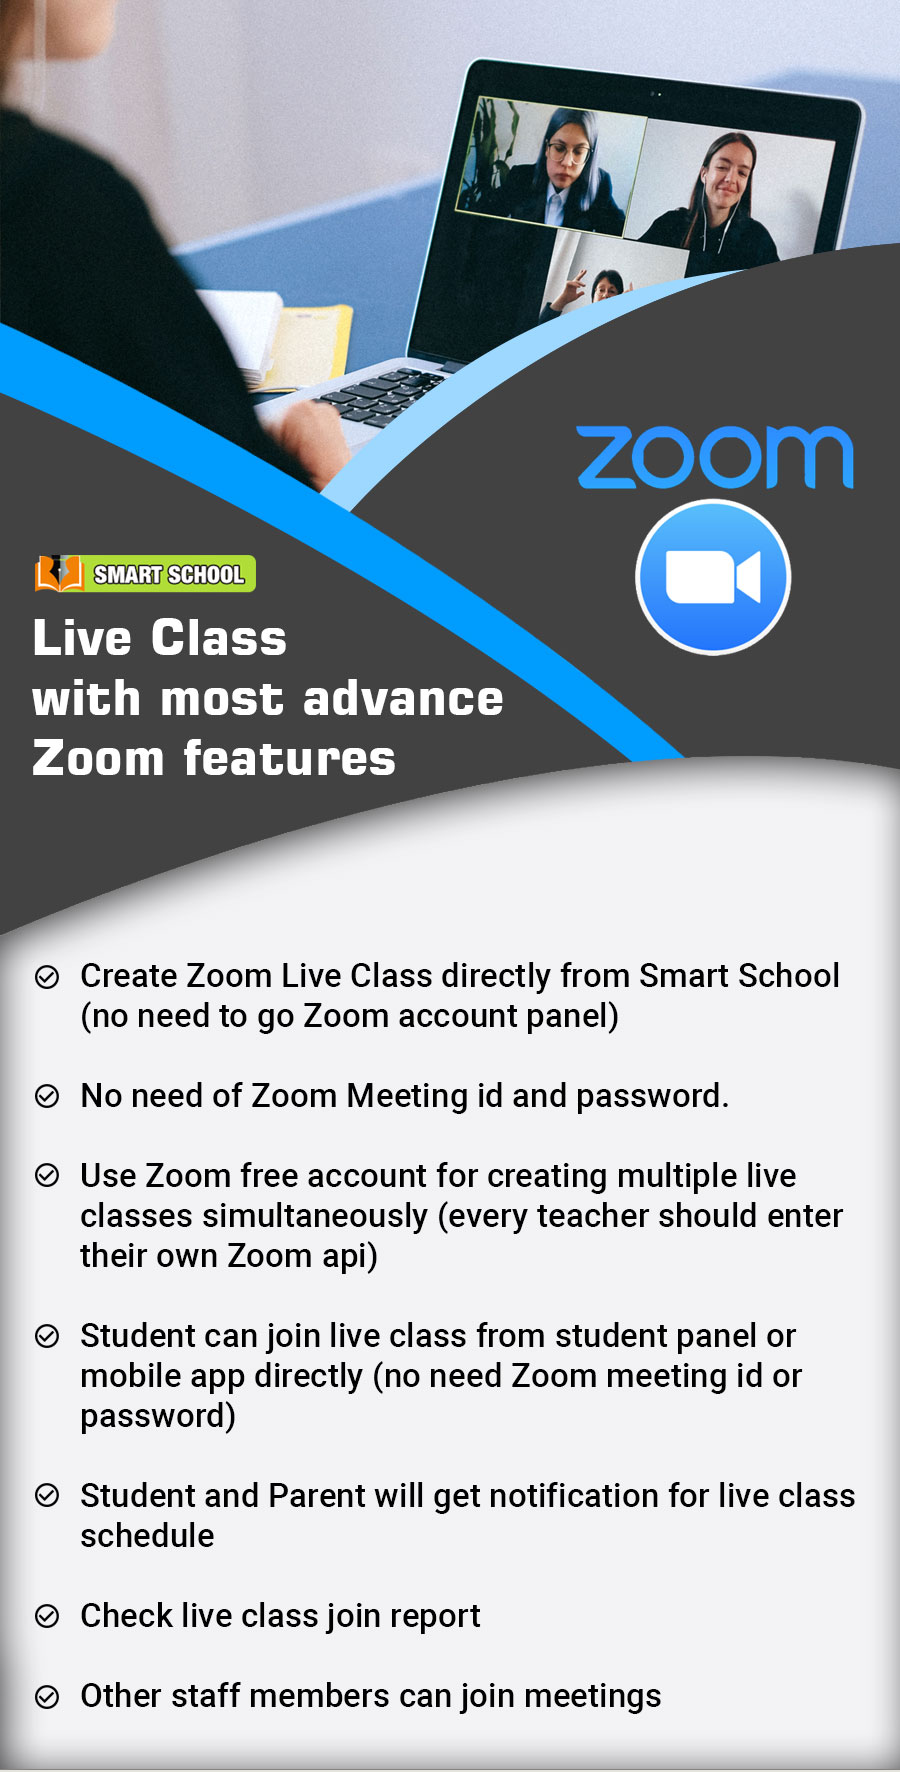 Smart School Zoom Live Class features